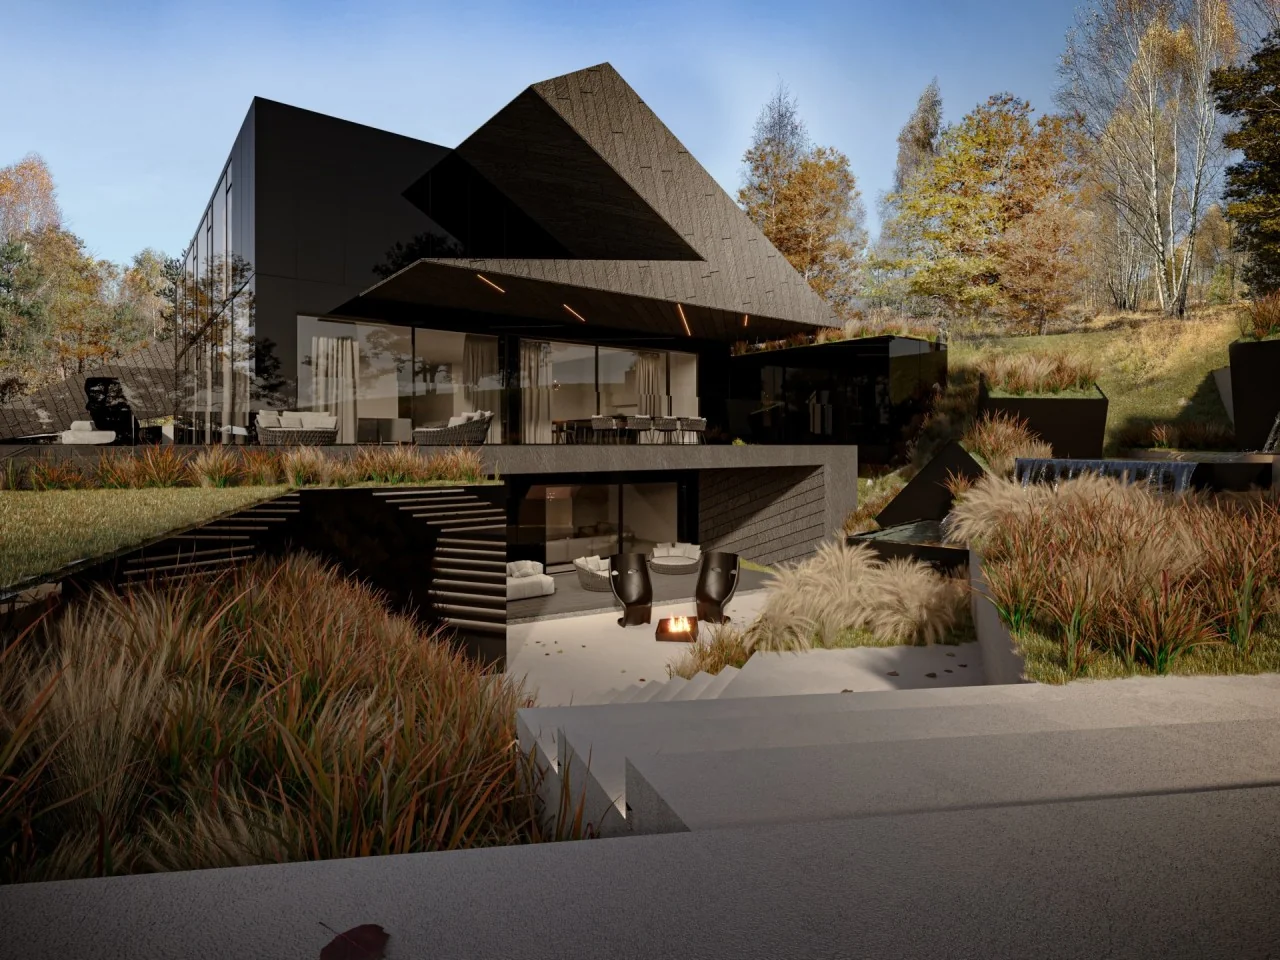 RE: NOTTURNO HOUSE projekt: REFORM Architekt